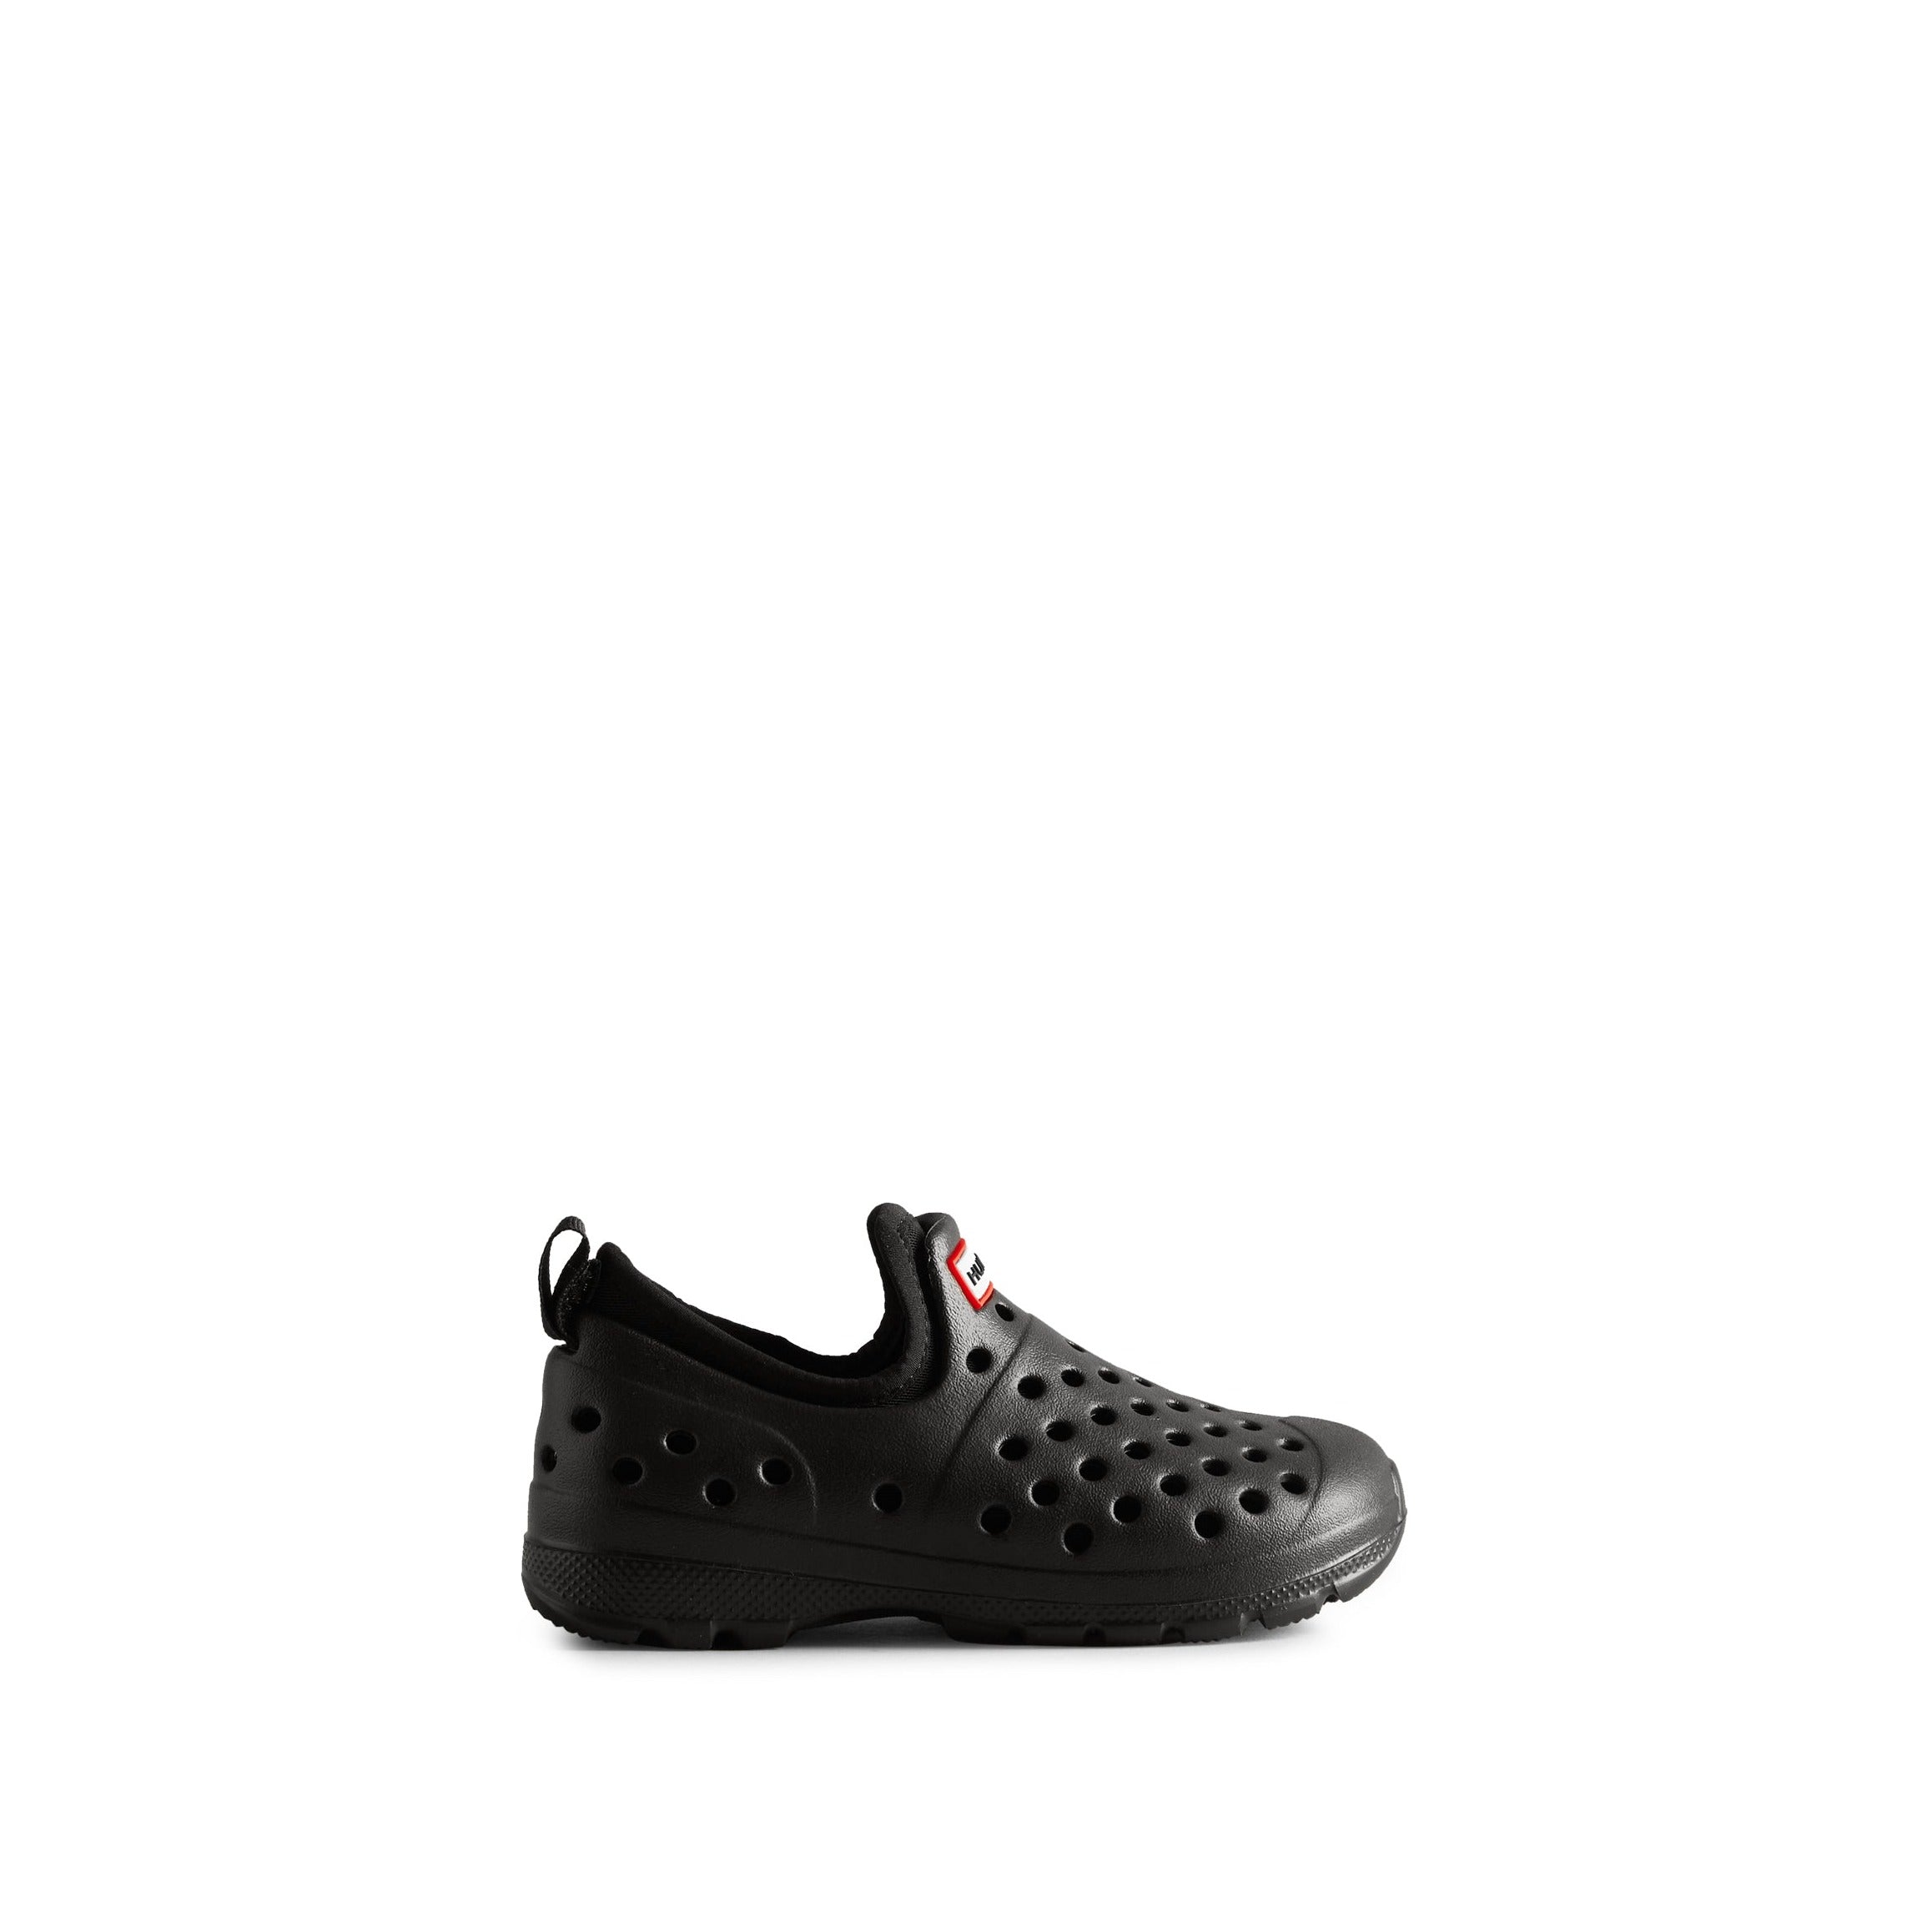 Sample UGG Little Kids Water Shoe Shoes Black 9 